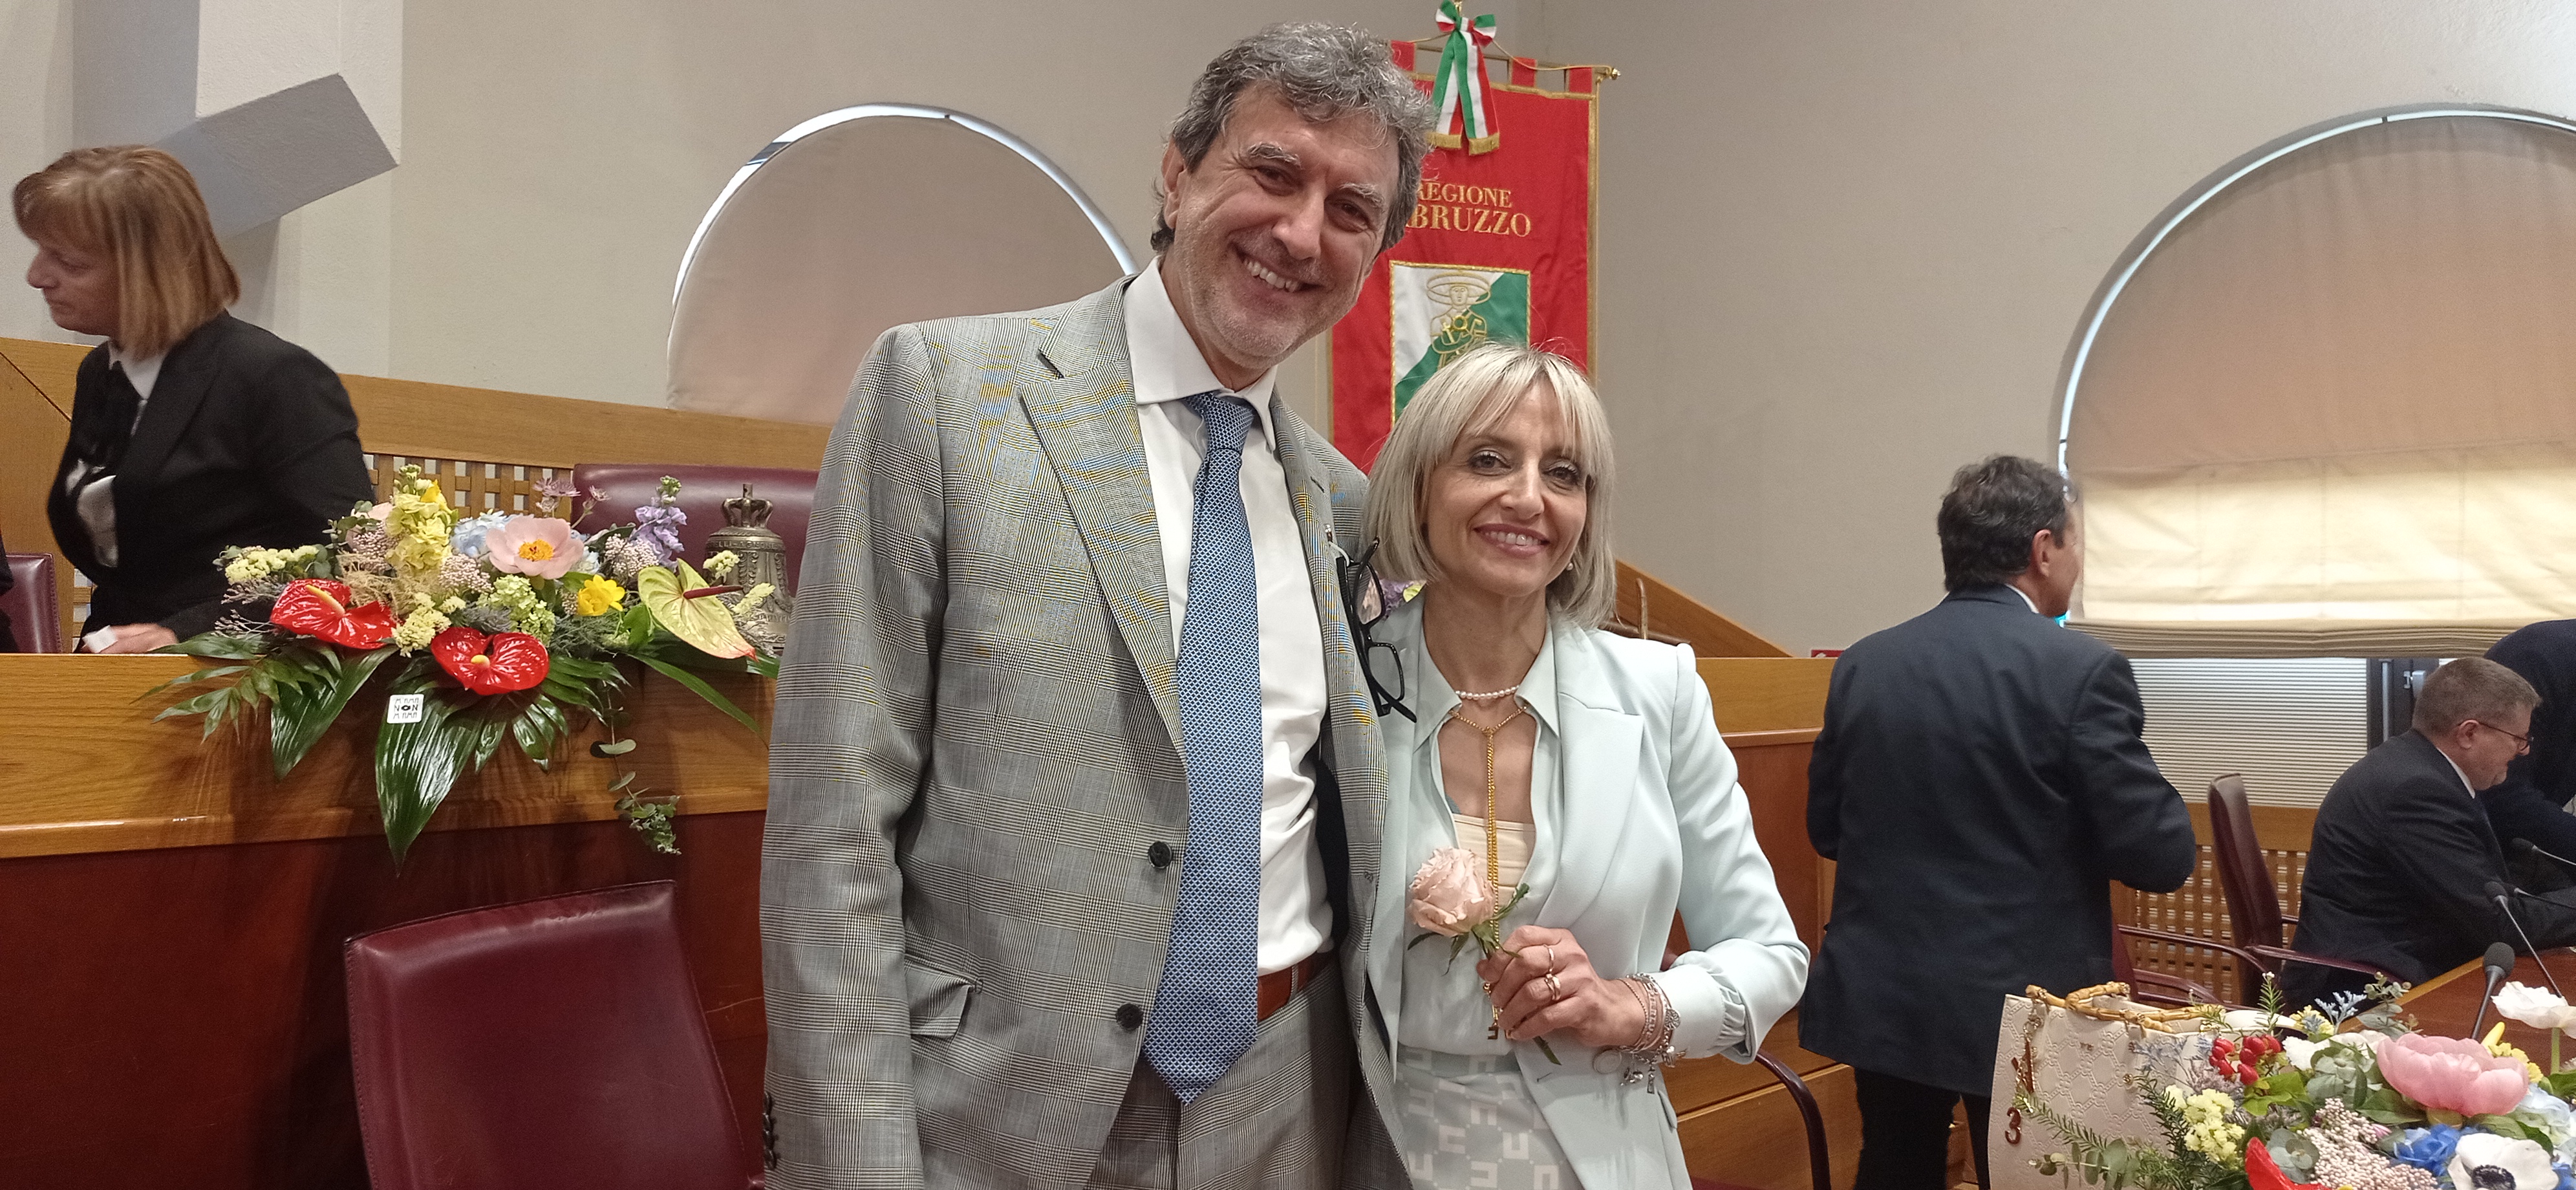 Nuova Giunta Regionale d'Abruzzo, il commento del neo assessore Tiziana Magnacca